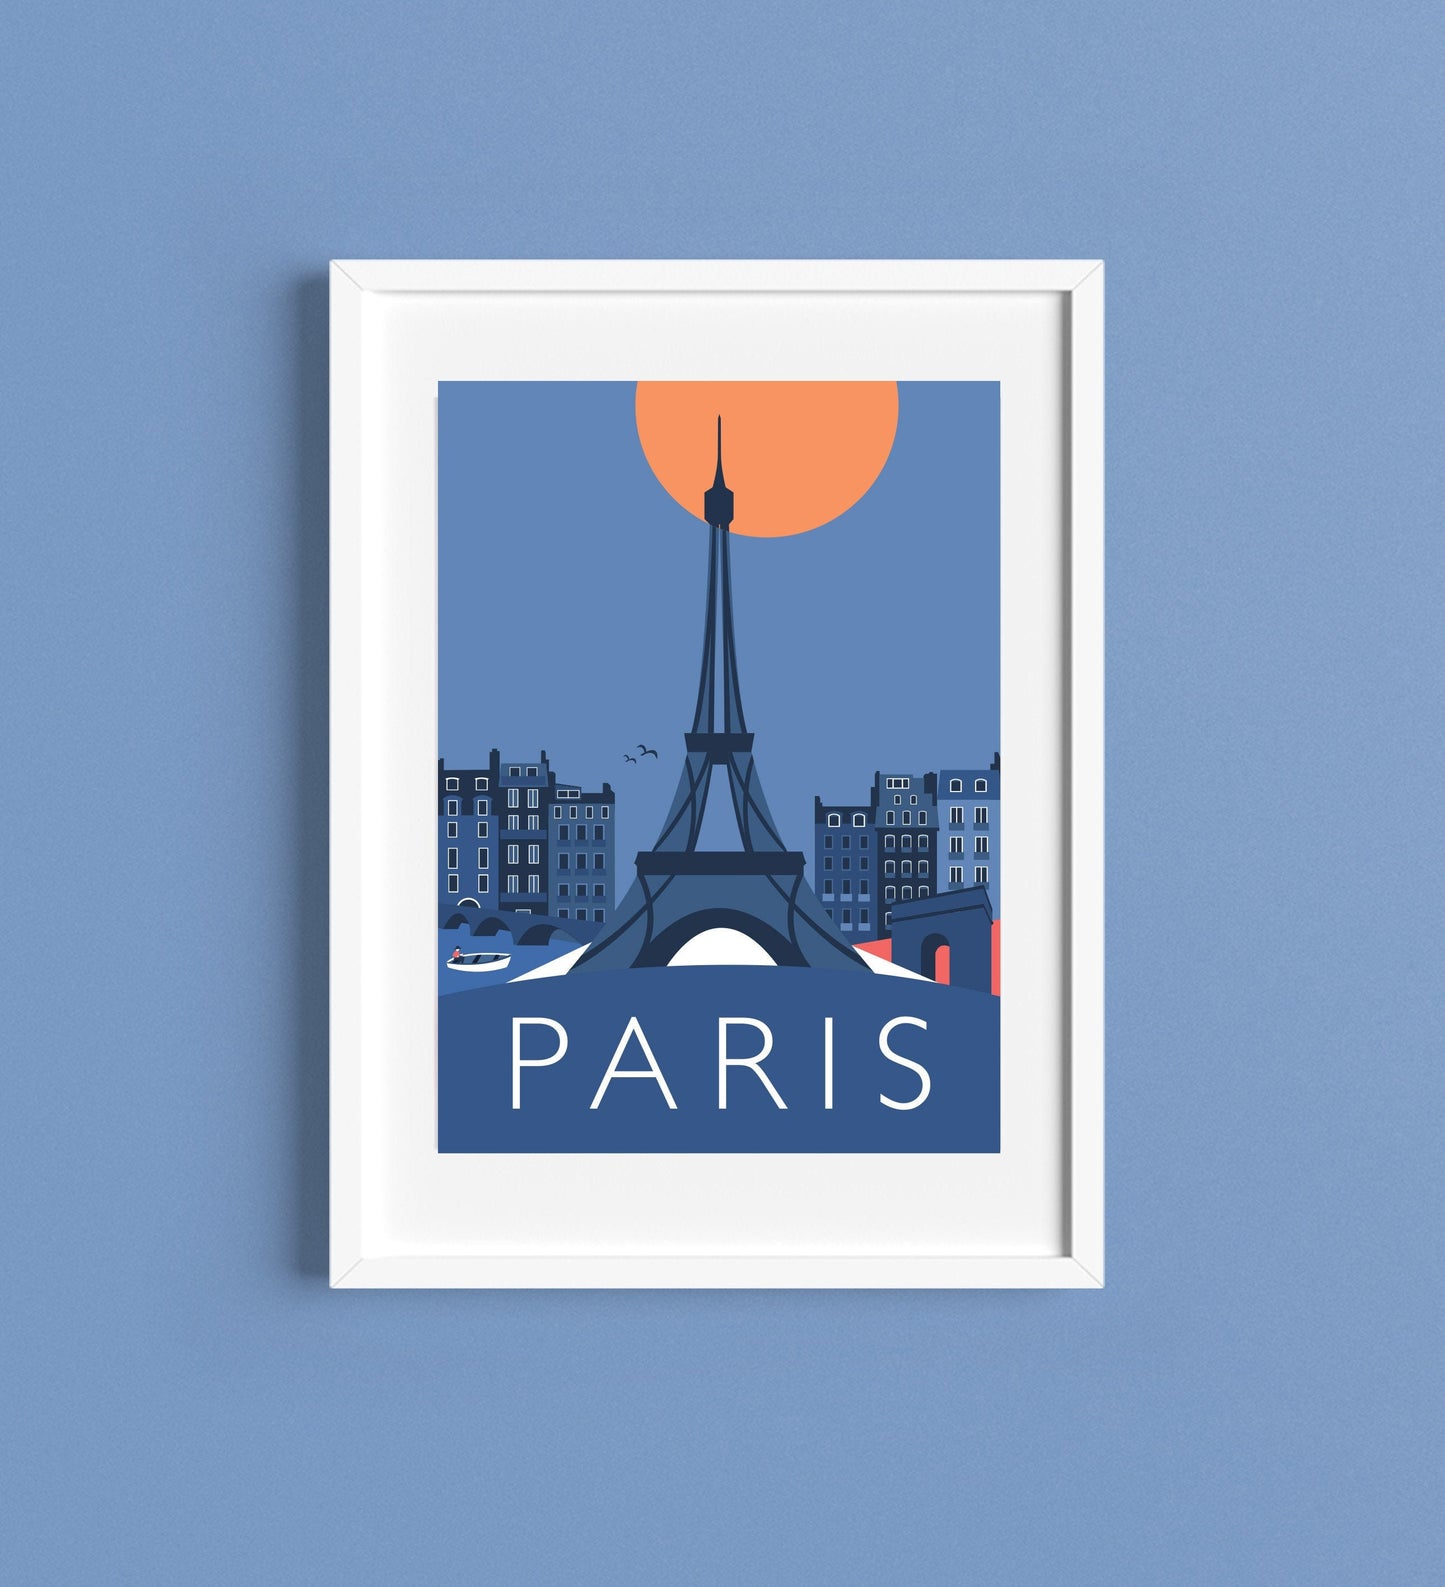 PARIS Eiffel Tower, Arc de Triomphe - Travel Poster - Art Deco - Illustration by Rebecca Pymar